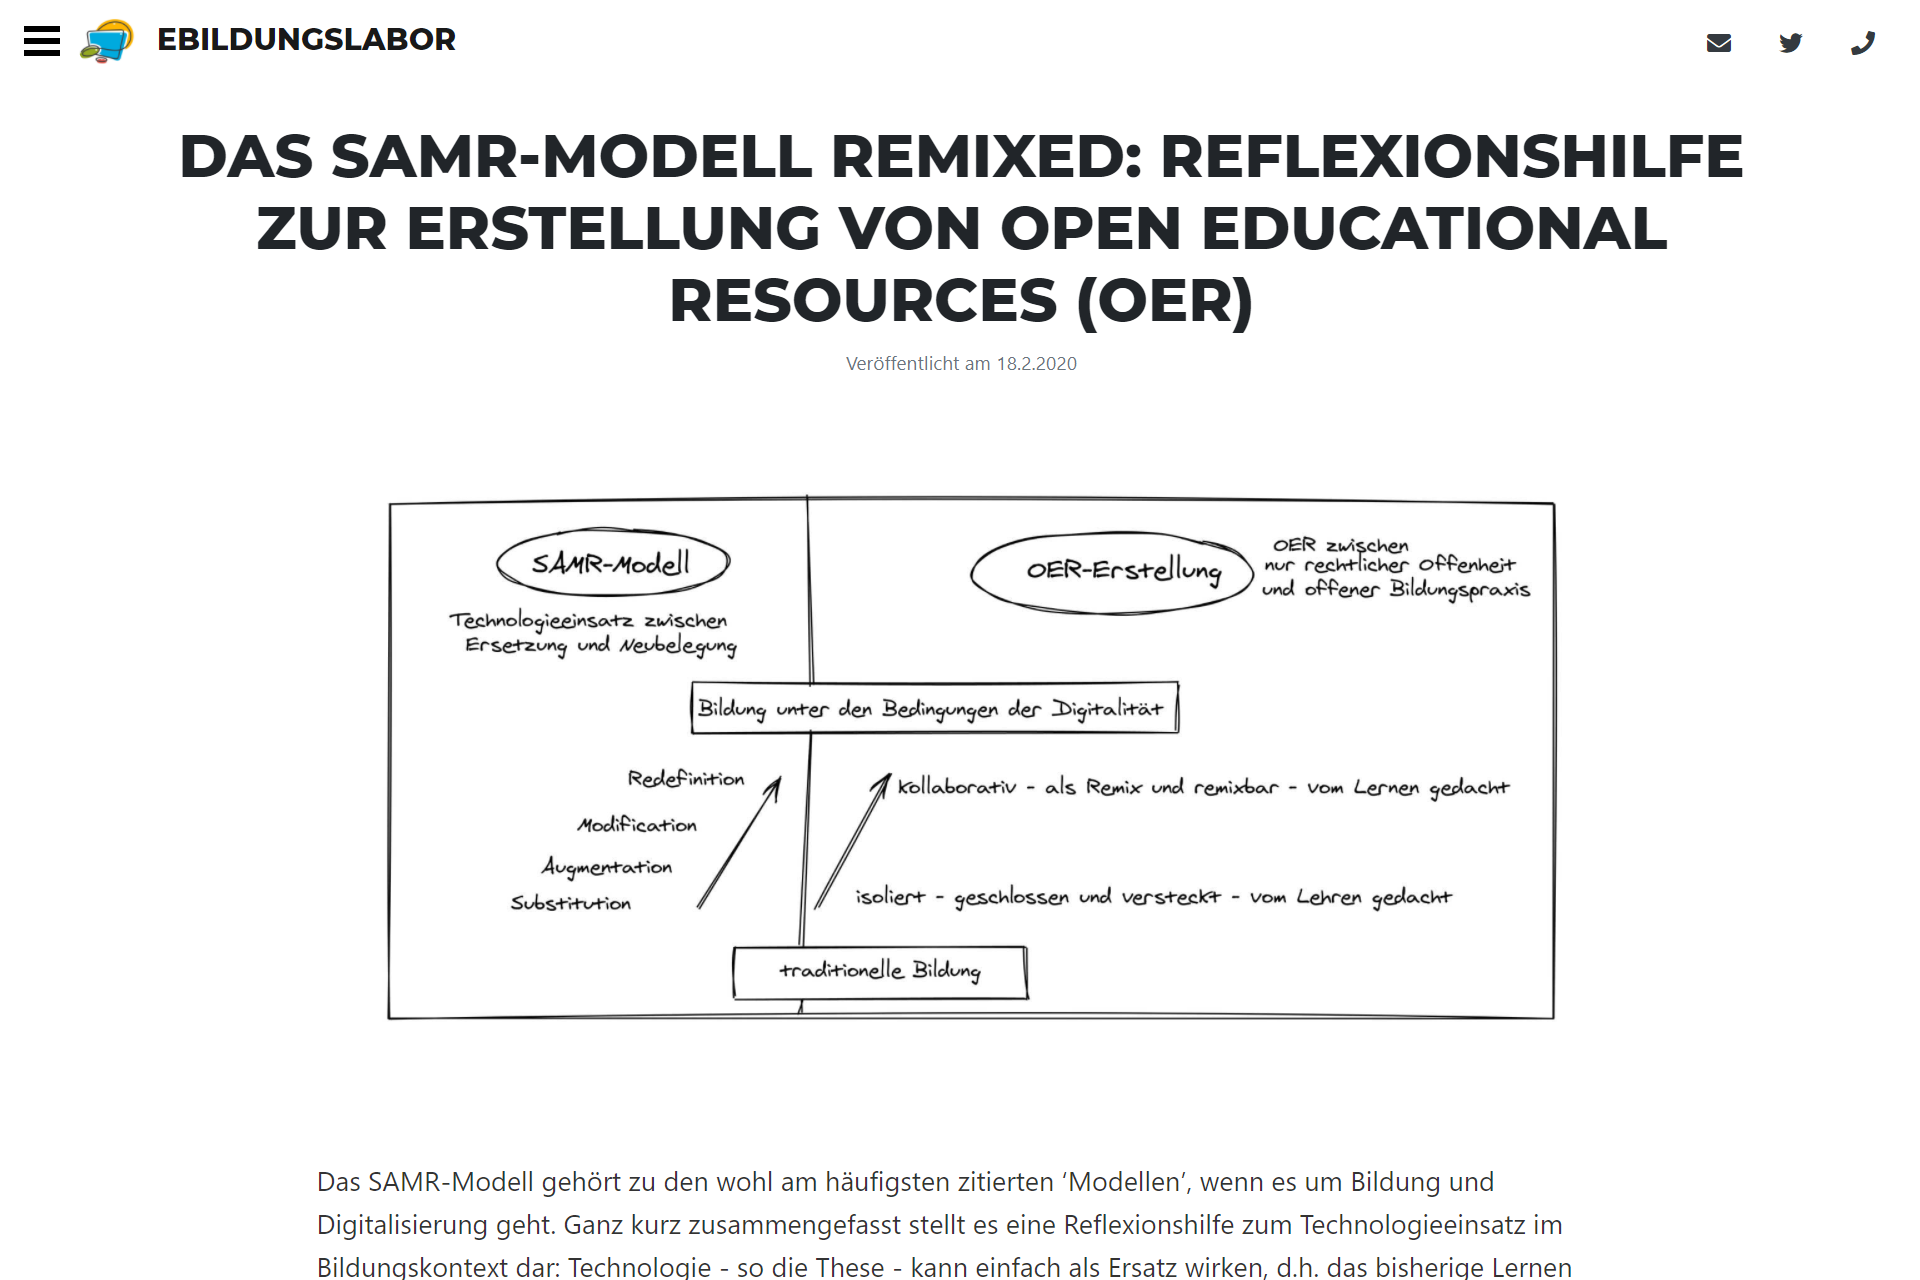 zum SAMR-Modell auf www.ebildungslabor.de